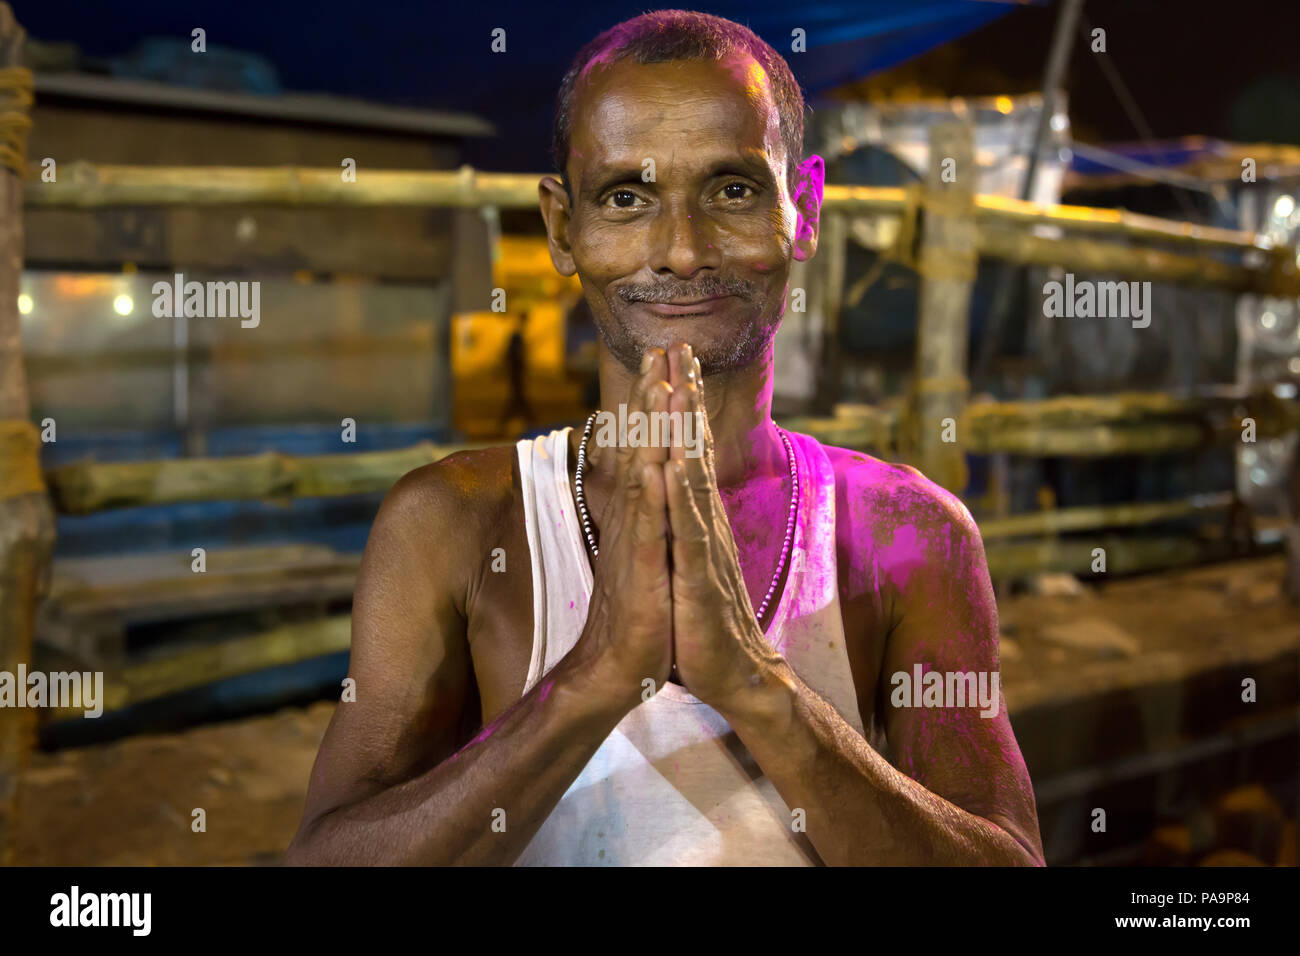 L'homme hindou de joindre les mains pendant la nuit célébration Durga puja à Calcutta, Inde Banque D'Images